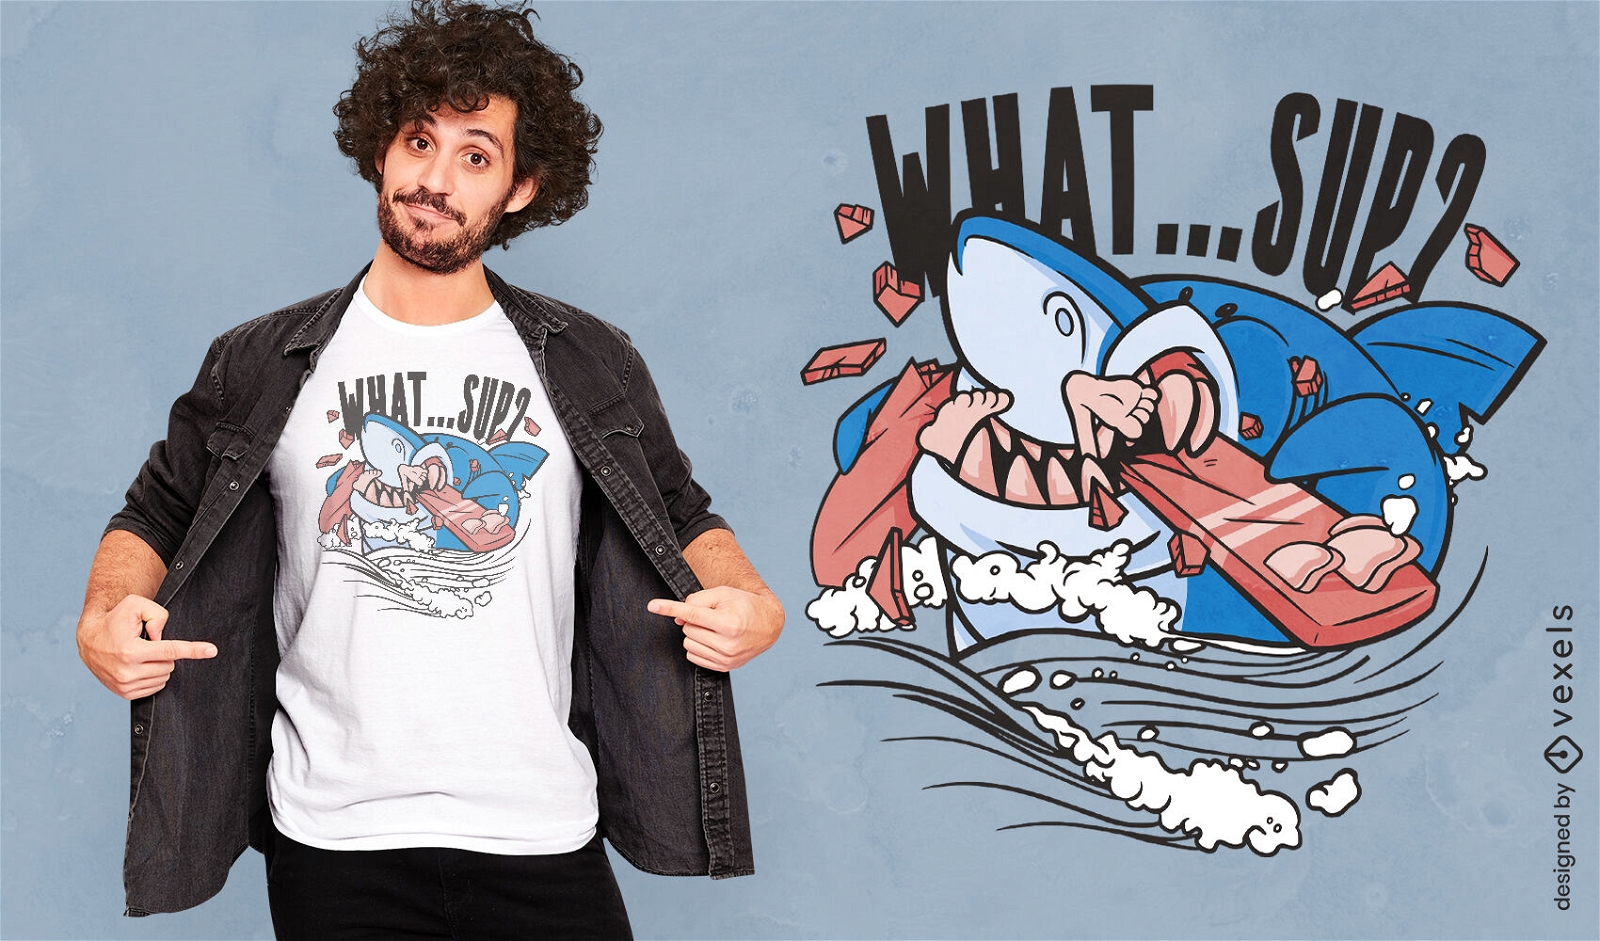 Shark biting surfboard t-shirt design